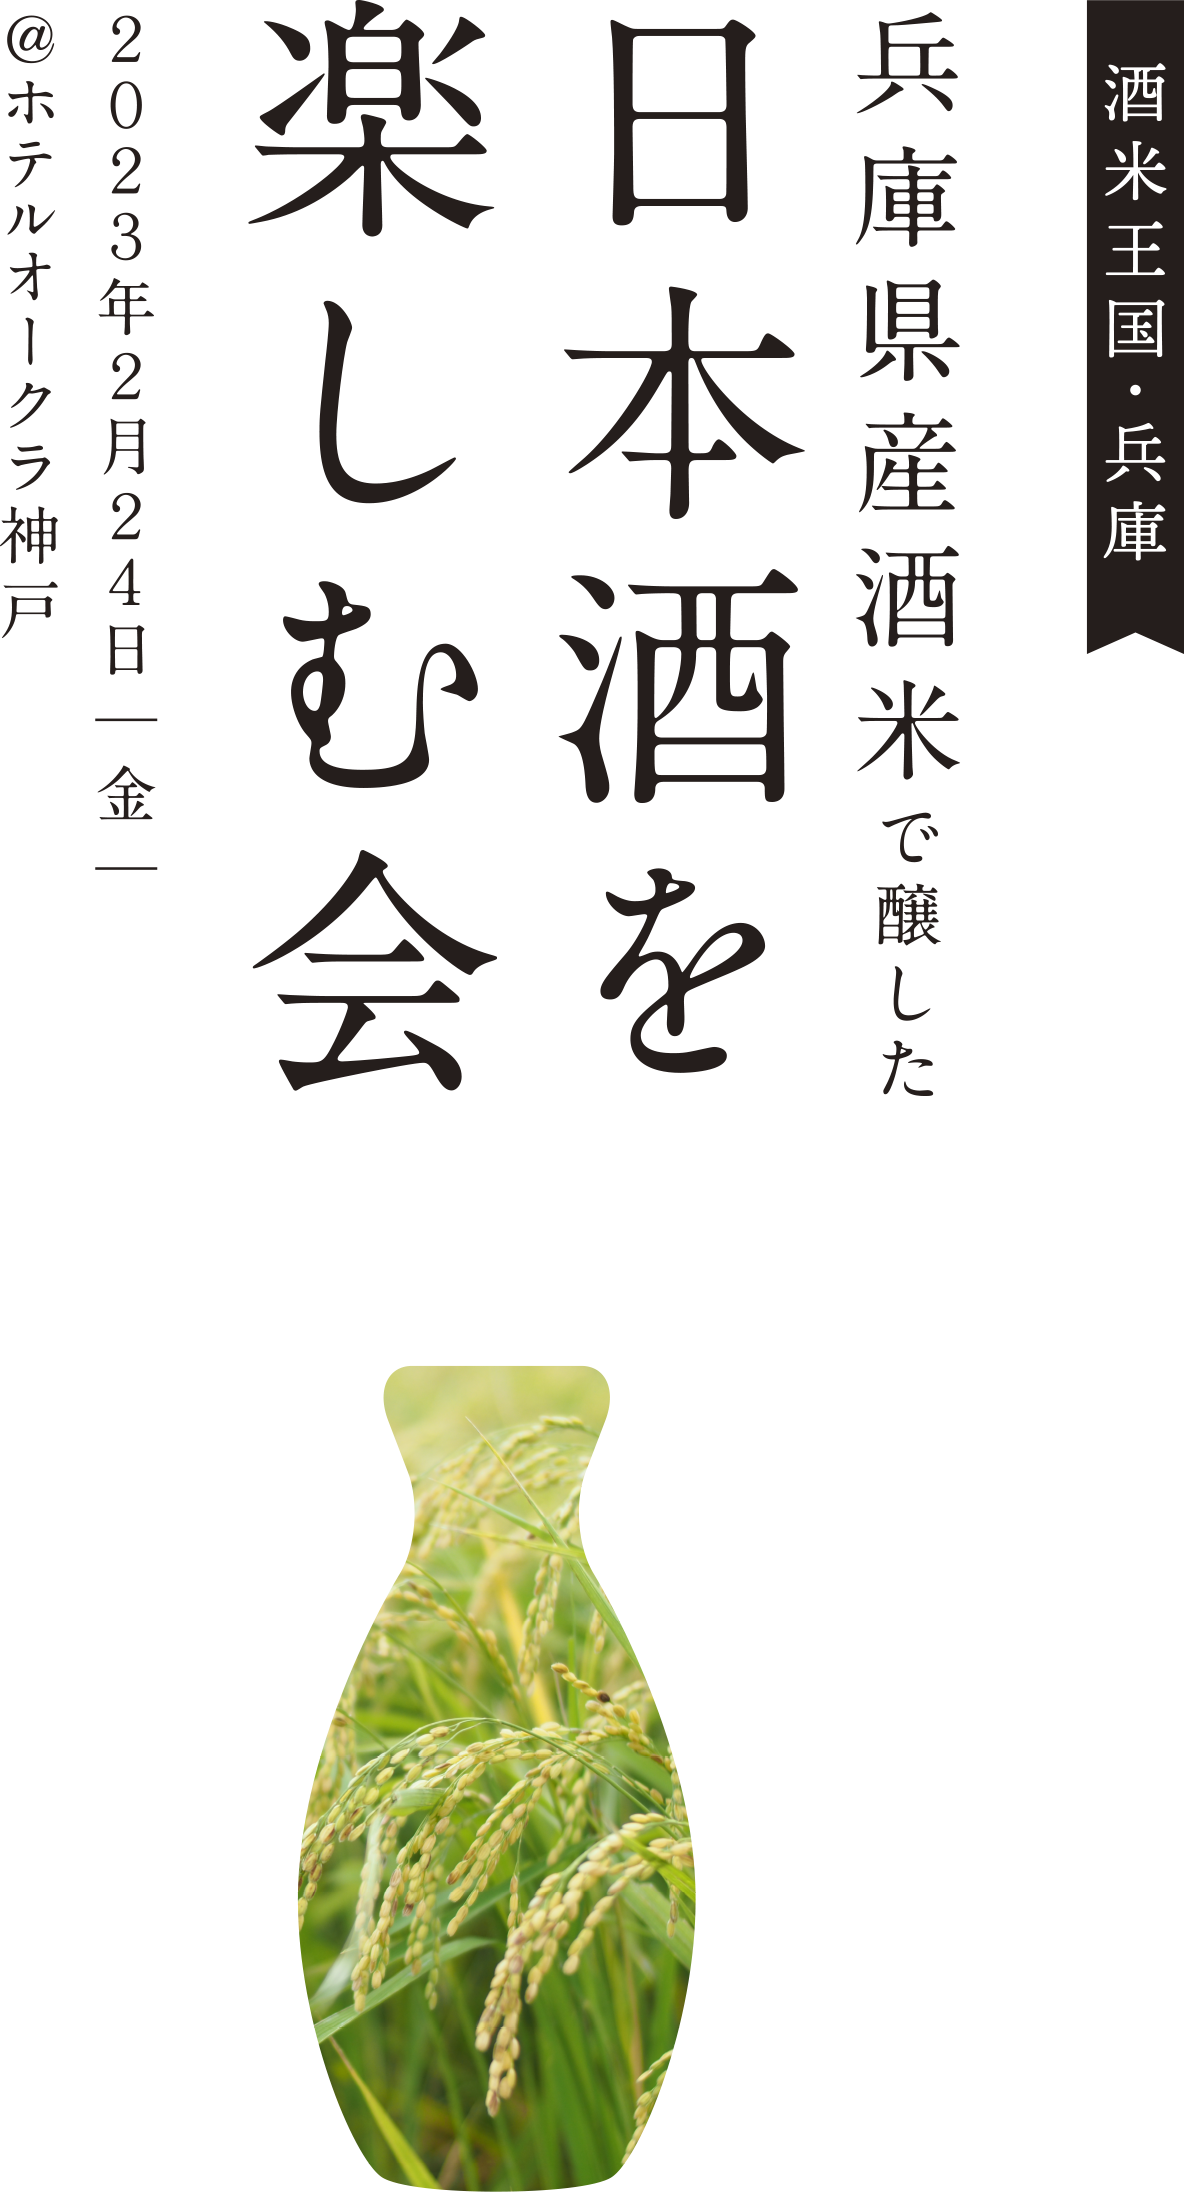 兵庫県産酒米で醸した日本酒を楽しむ会